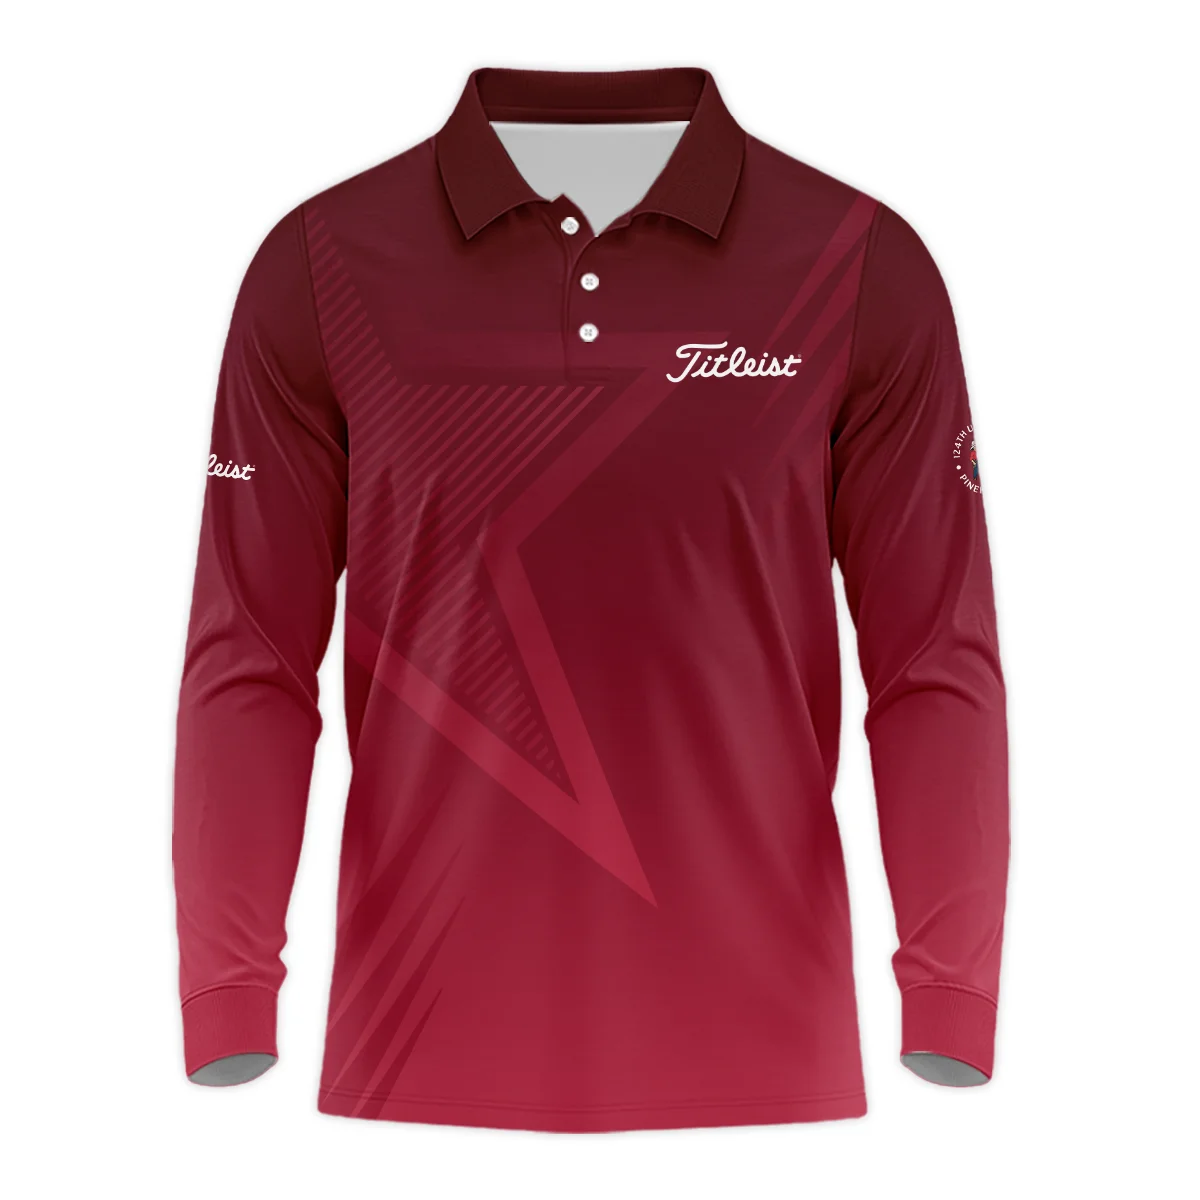 Titleist 124th U.S. Open Pinehurst Golf Sport Unisex Sweatshirt Star Gradient Red Straight Pattern Sweatshirt